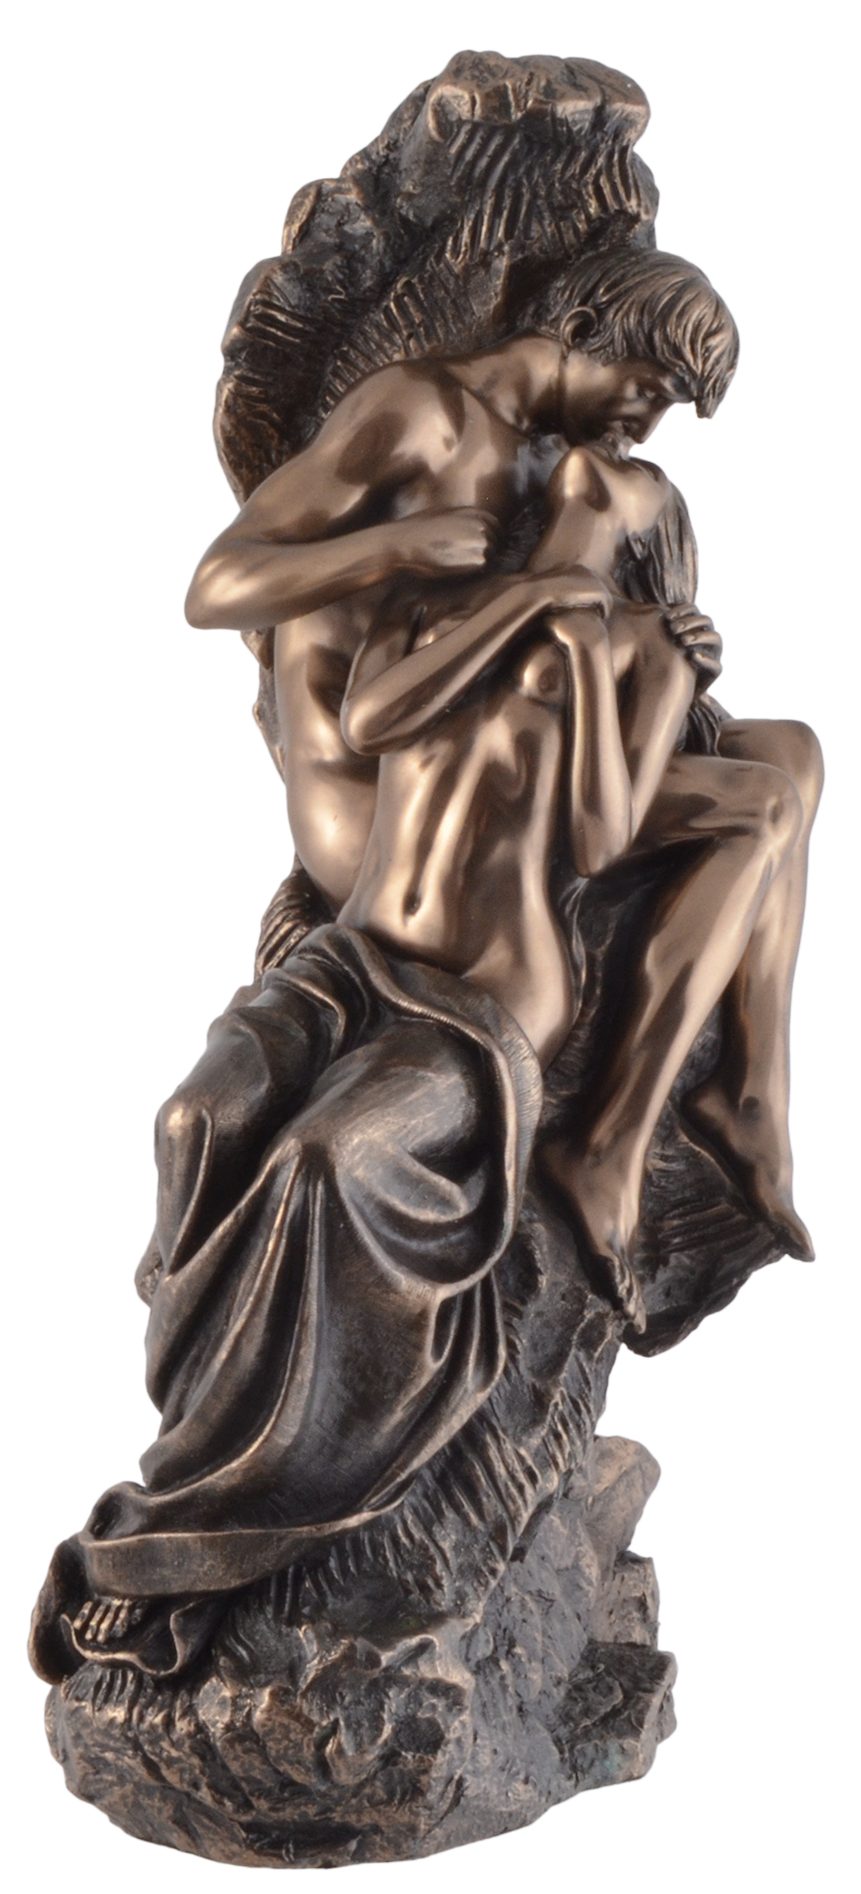 Liebenden Hand ca. bronziert, - direct by "Eternal Gmbh Veronese, LxBxH: von Die 18x13x31cm Rodin nach Spring" Vogler Dekofigur